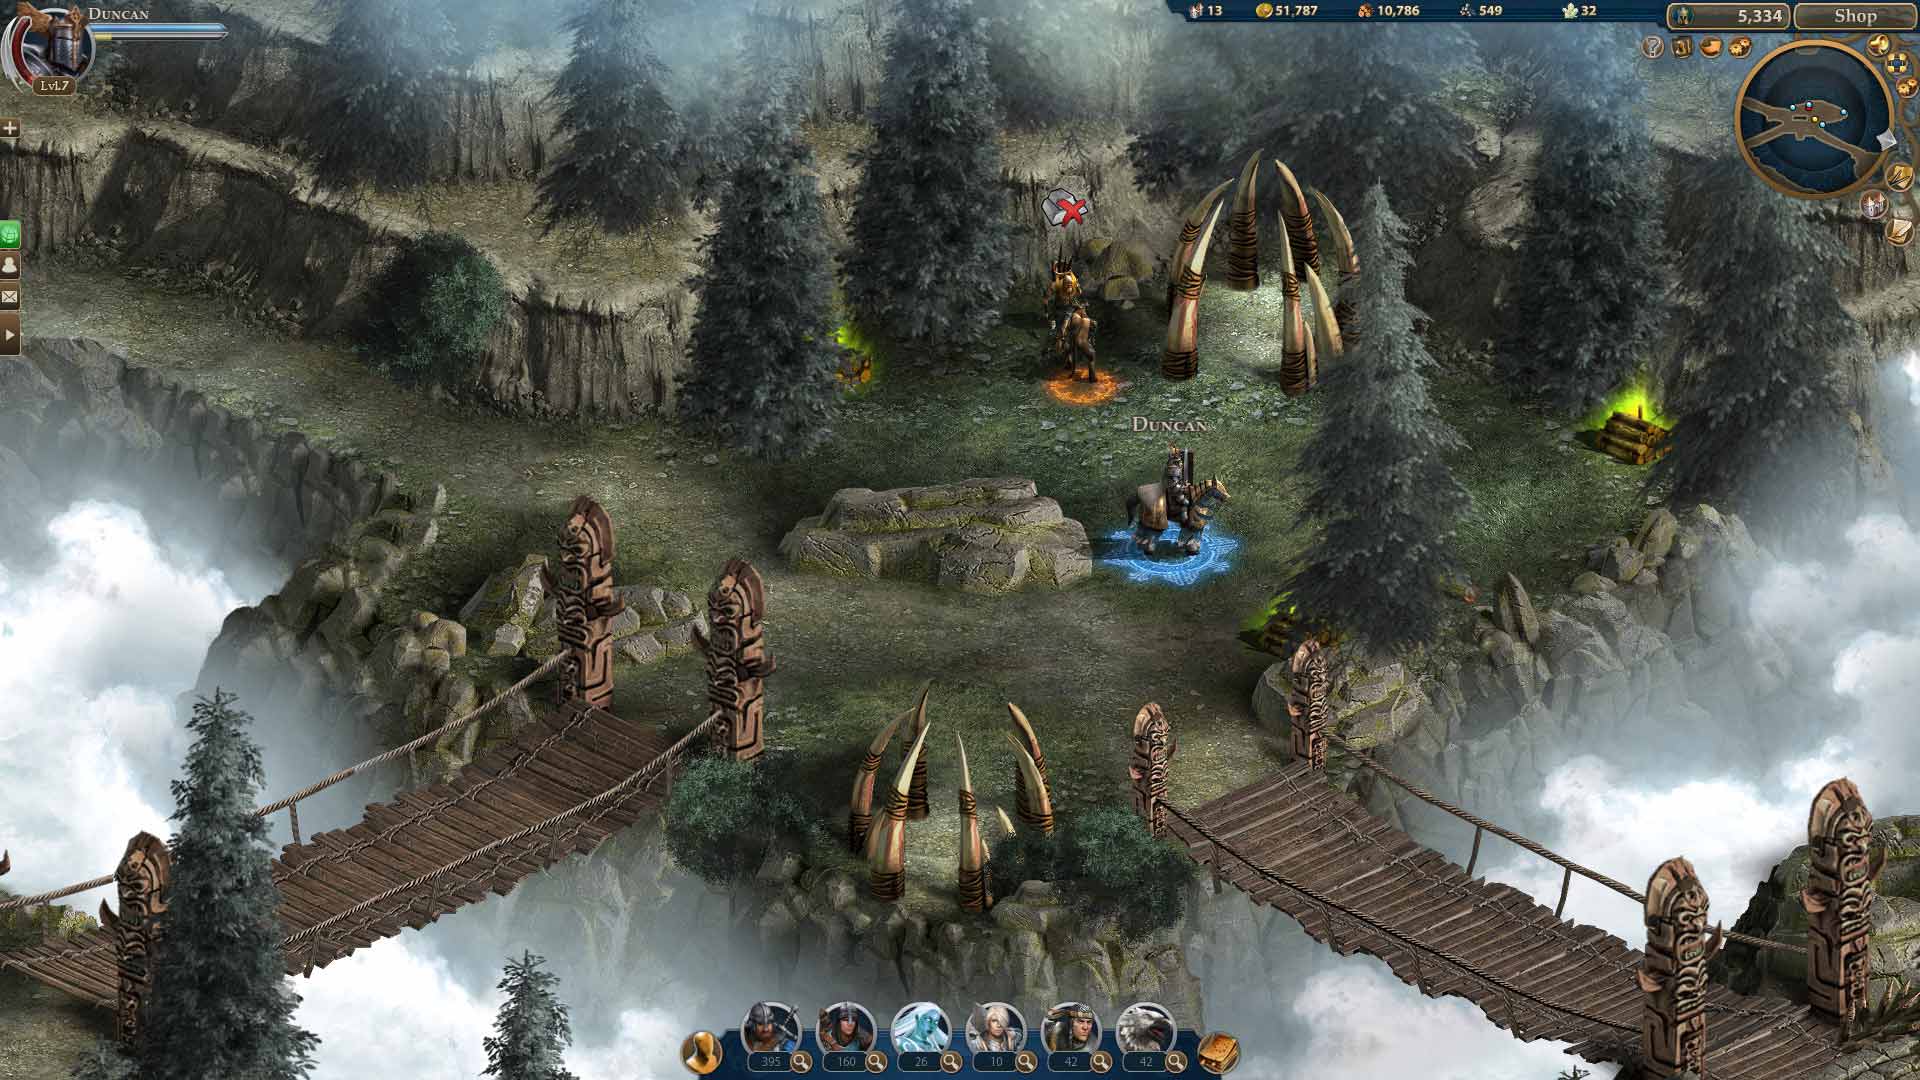 Скриншот к игре Герои Онлайн